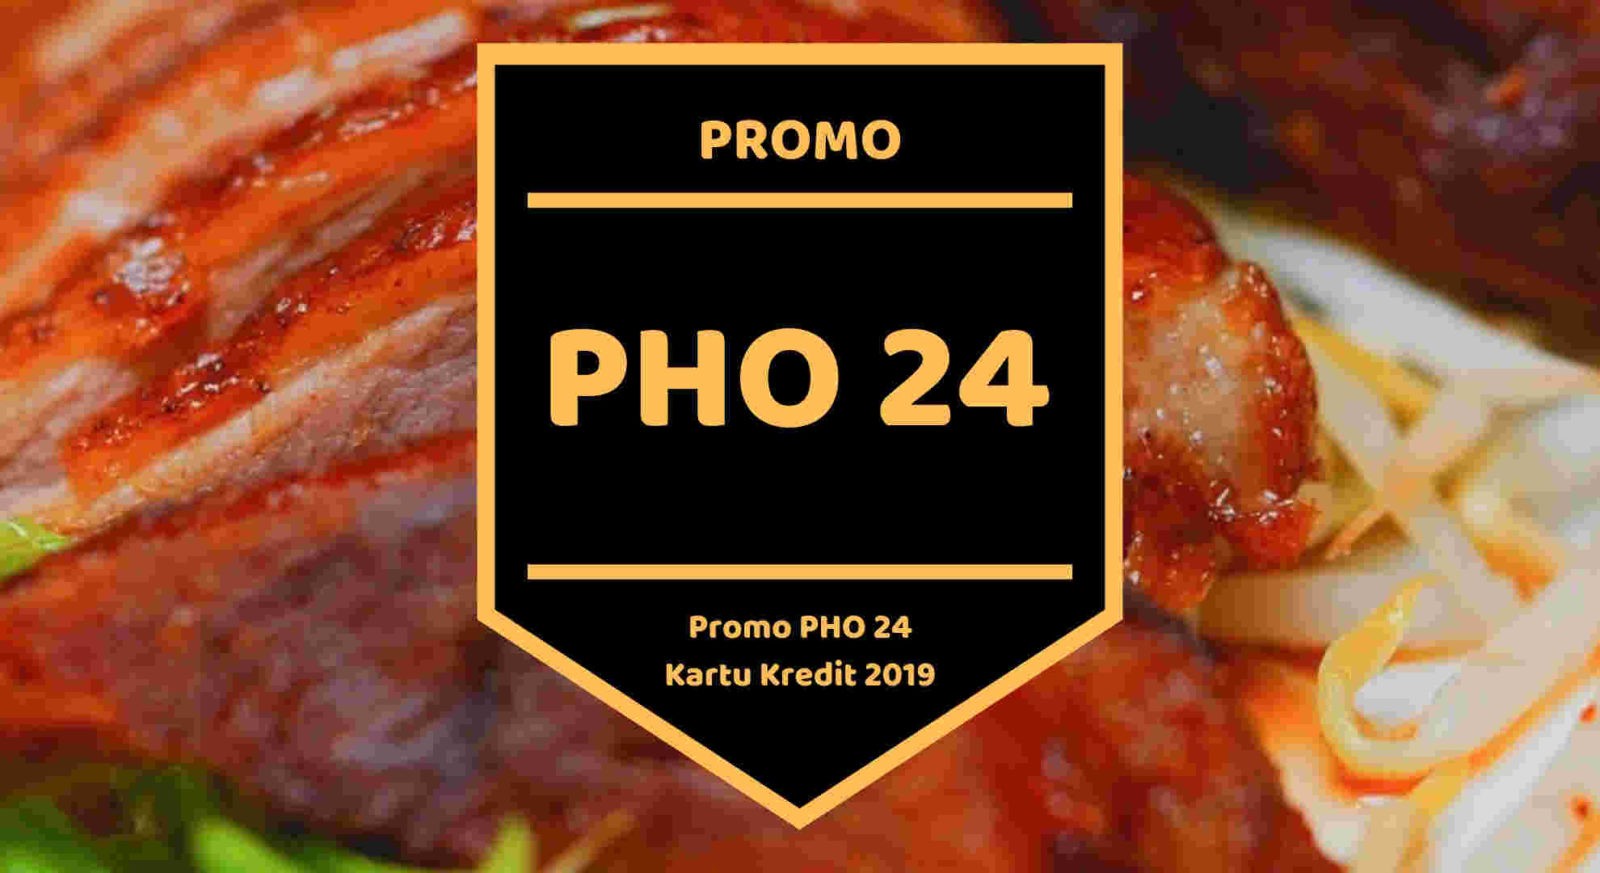 Promo Pho 24